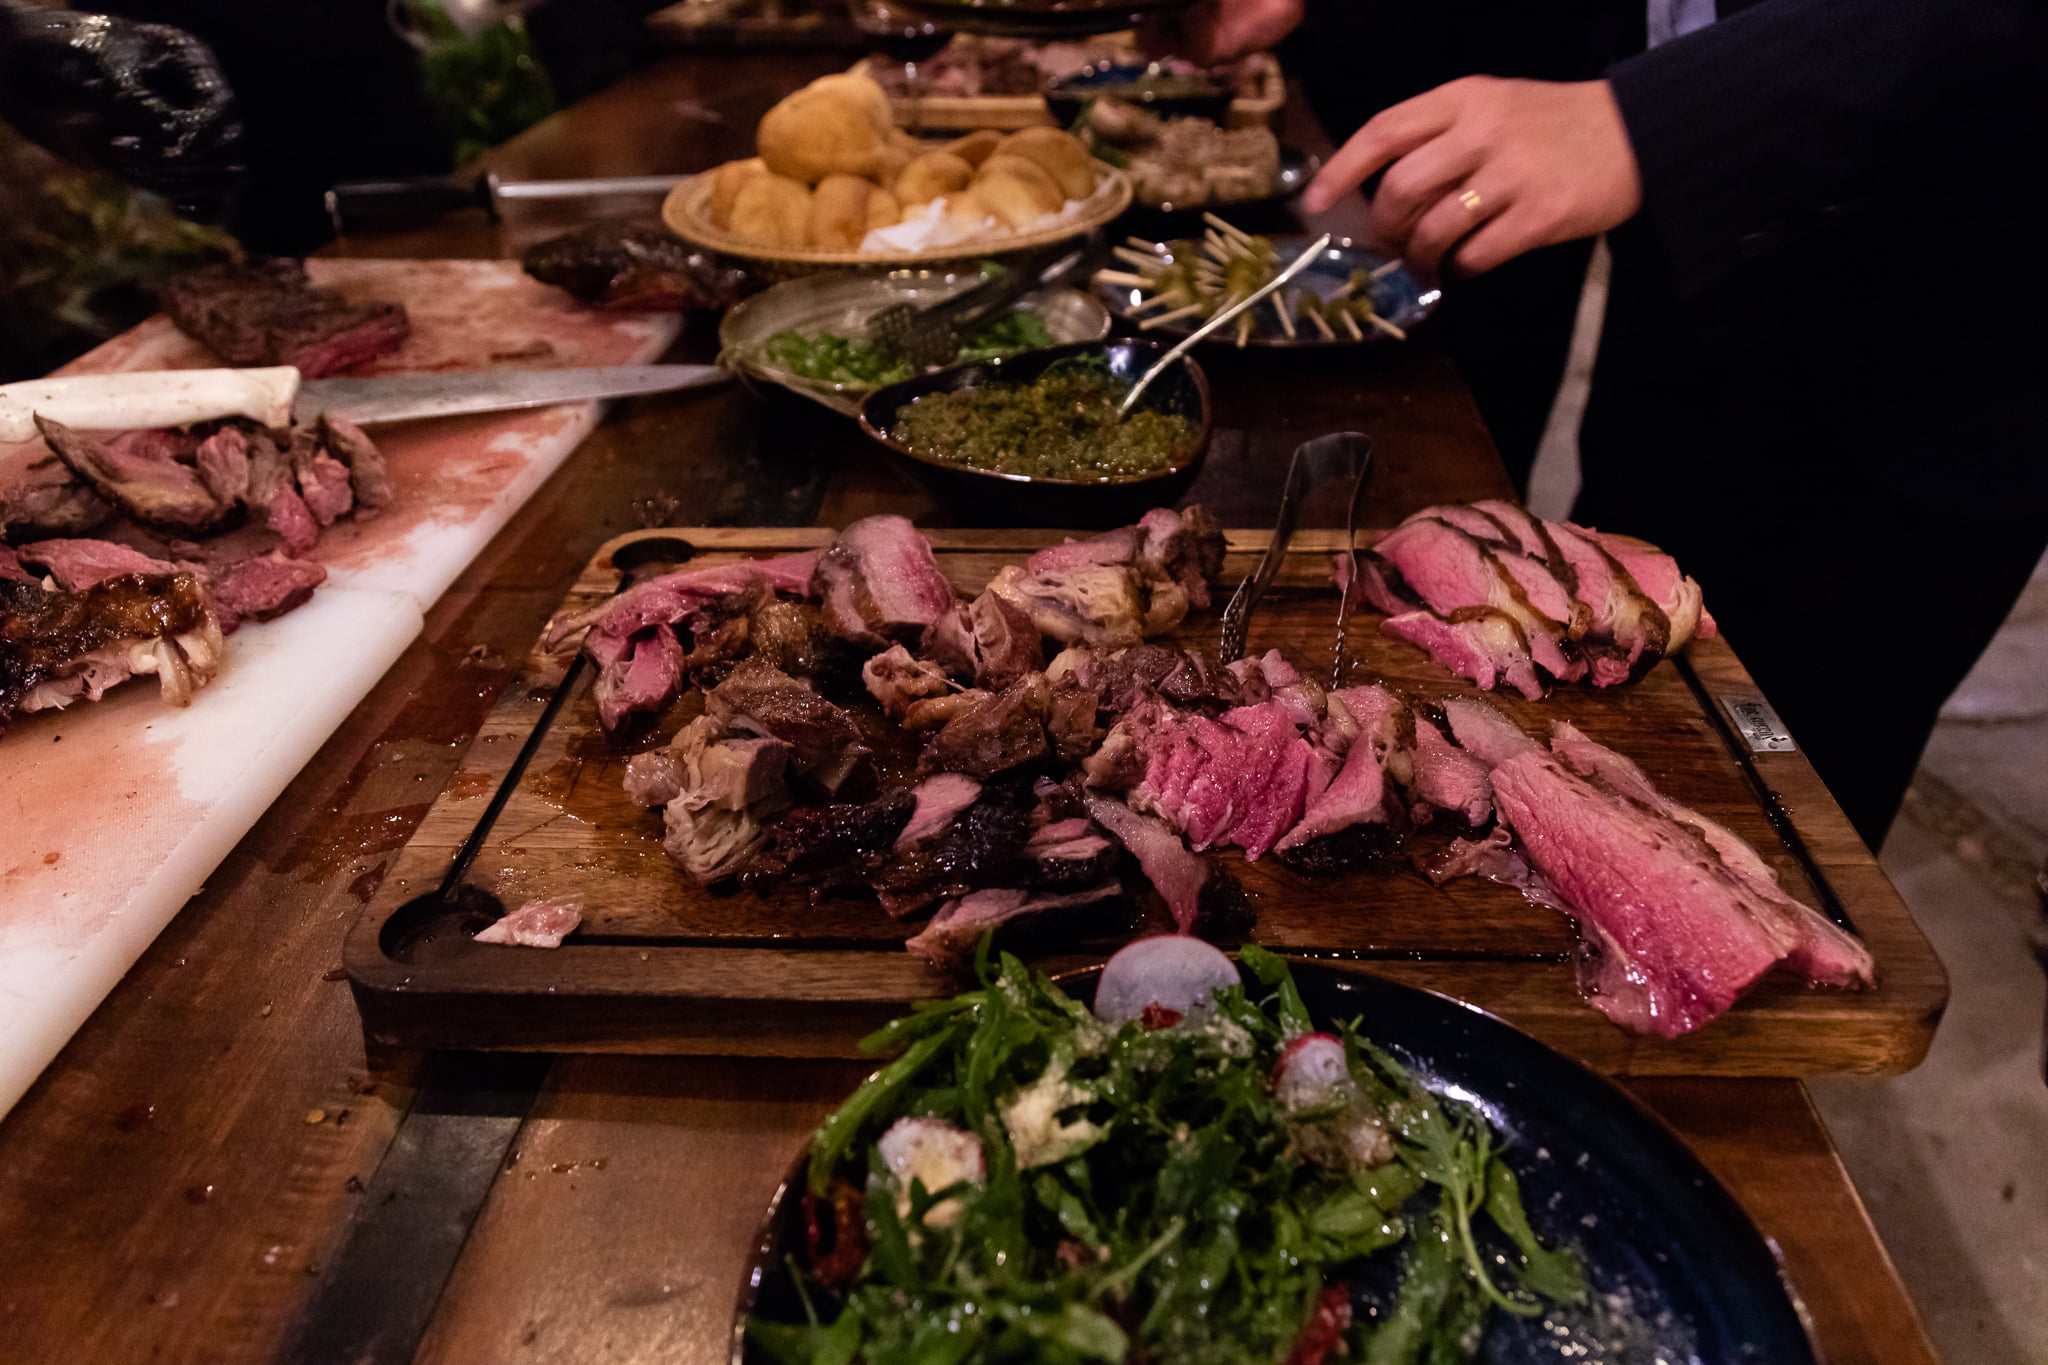 Ngày hội rượu vang và thịt bò Argentina tổ chức vào ngày 23/5/2022 tại nhà hàng “Los Fuegos - Argentina Steak & Grill” nằm ở trung tâm quận Tây Hồ